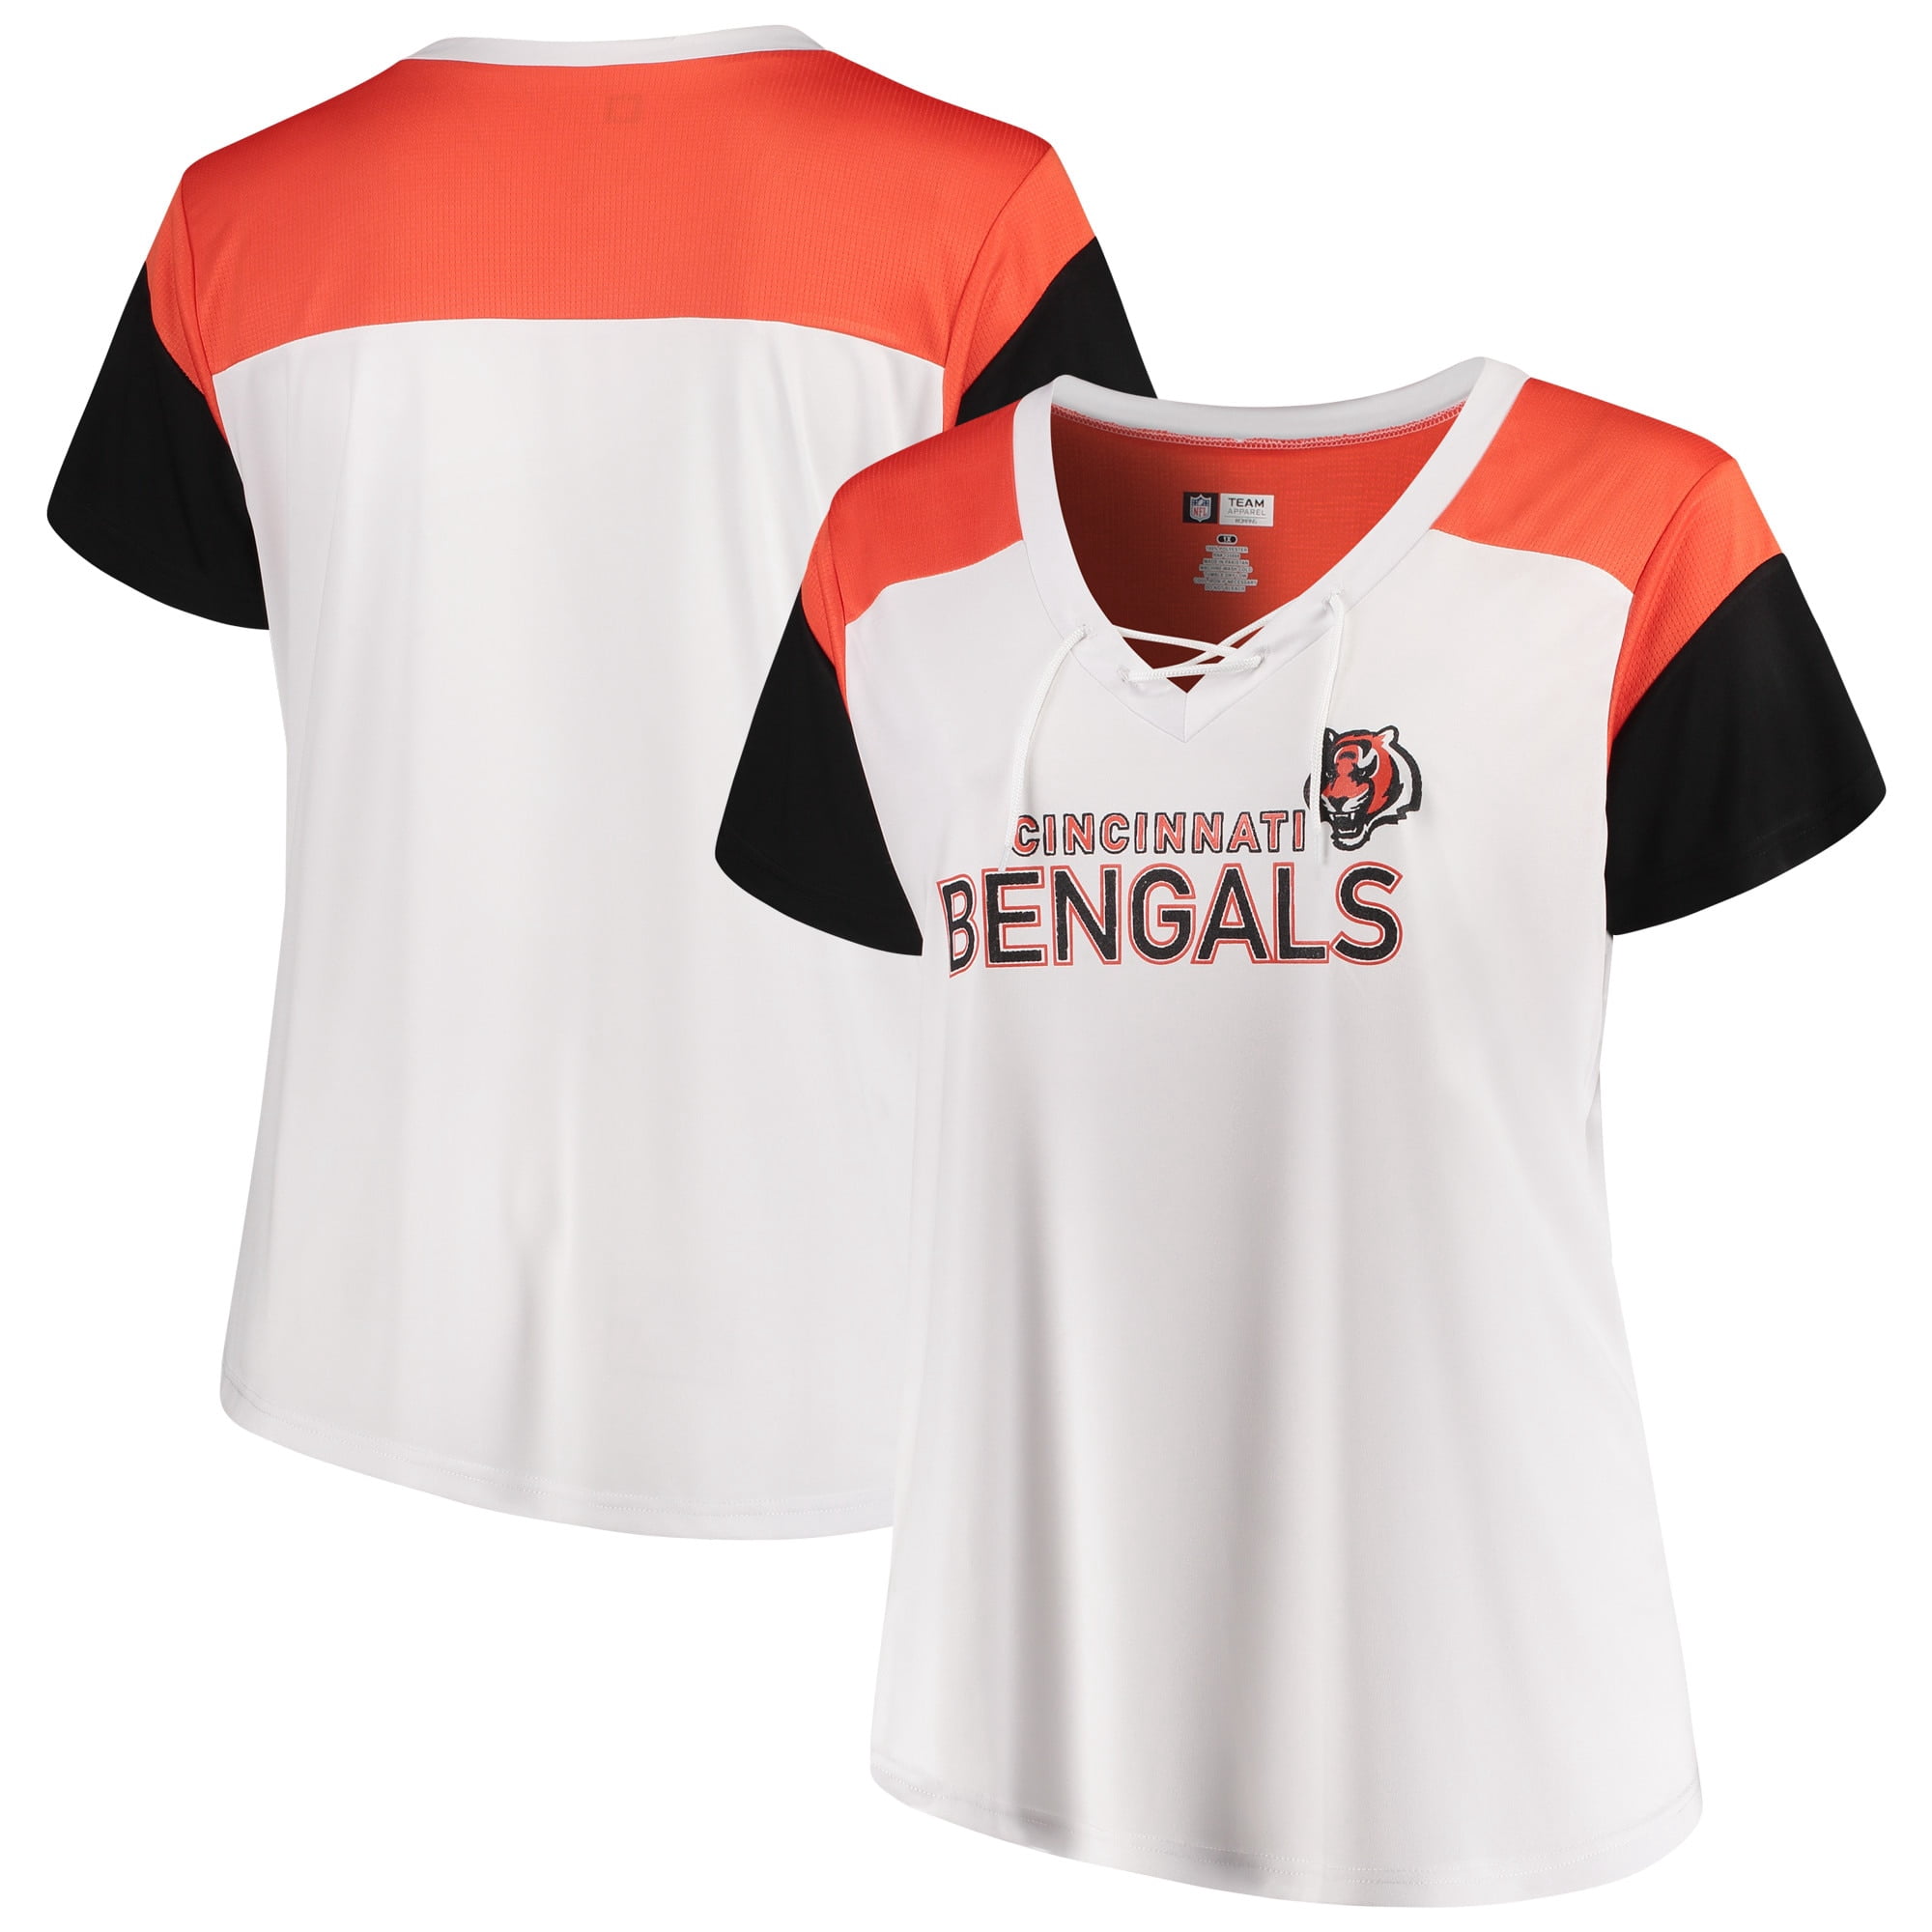 bengals women's jersey